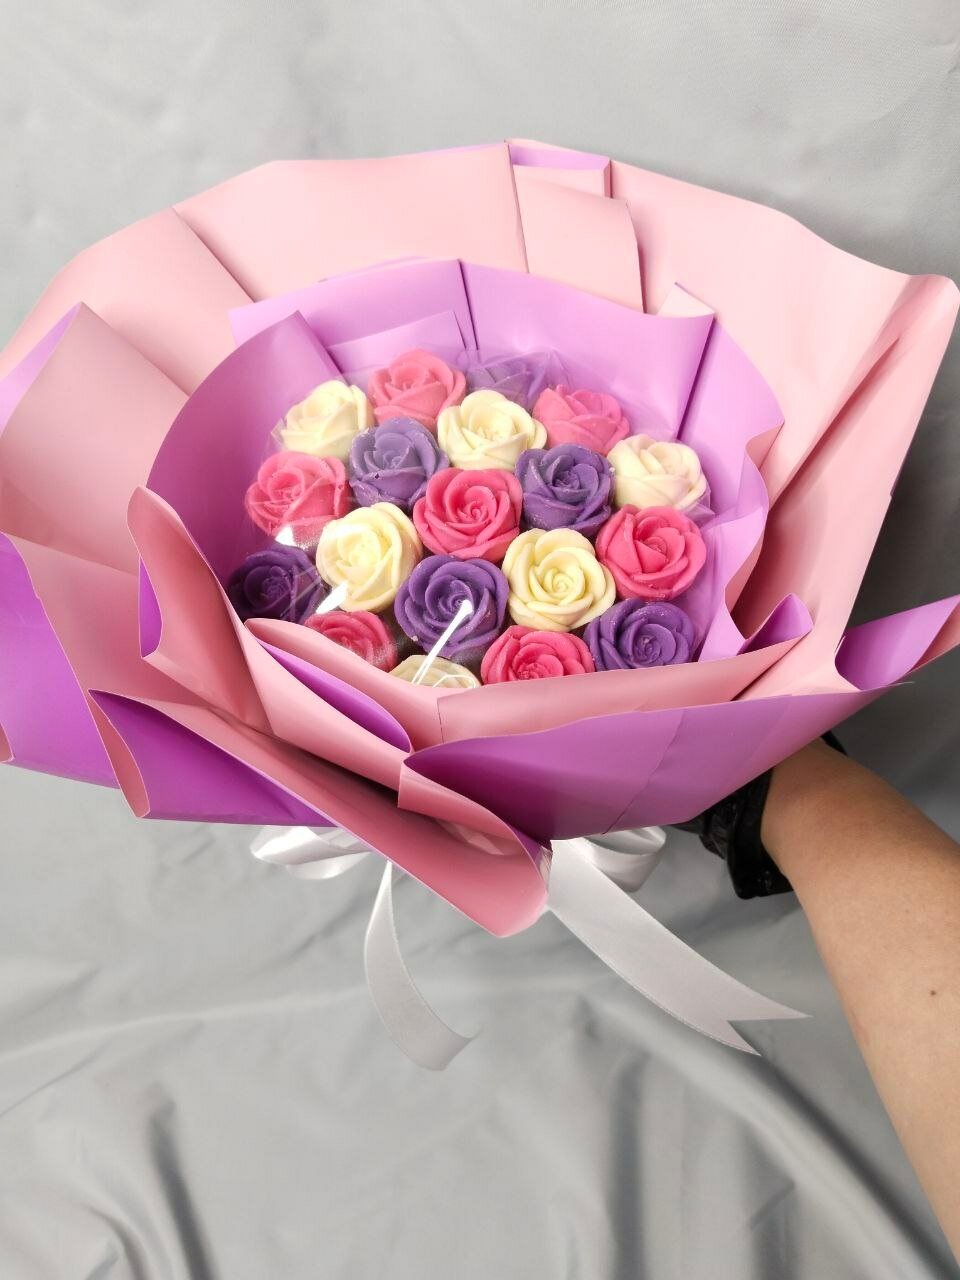 Букет из 19 шоколадных роз розовое  лимонные на день рождения юбилей учителю маме  мужу на свадьбу день влюбленных